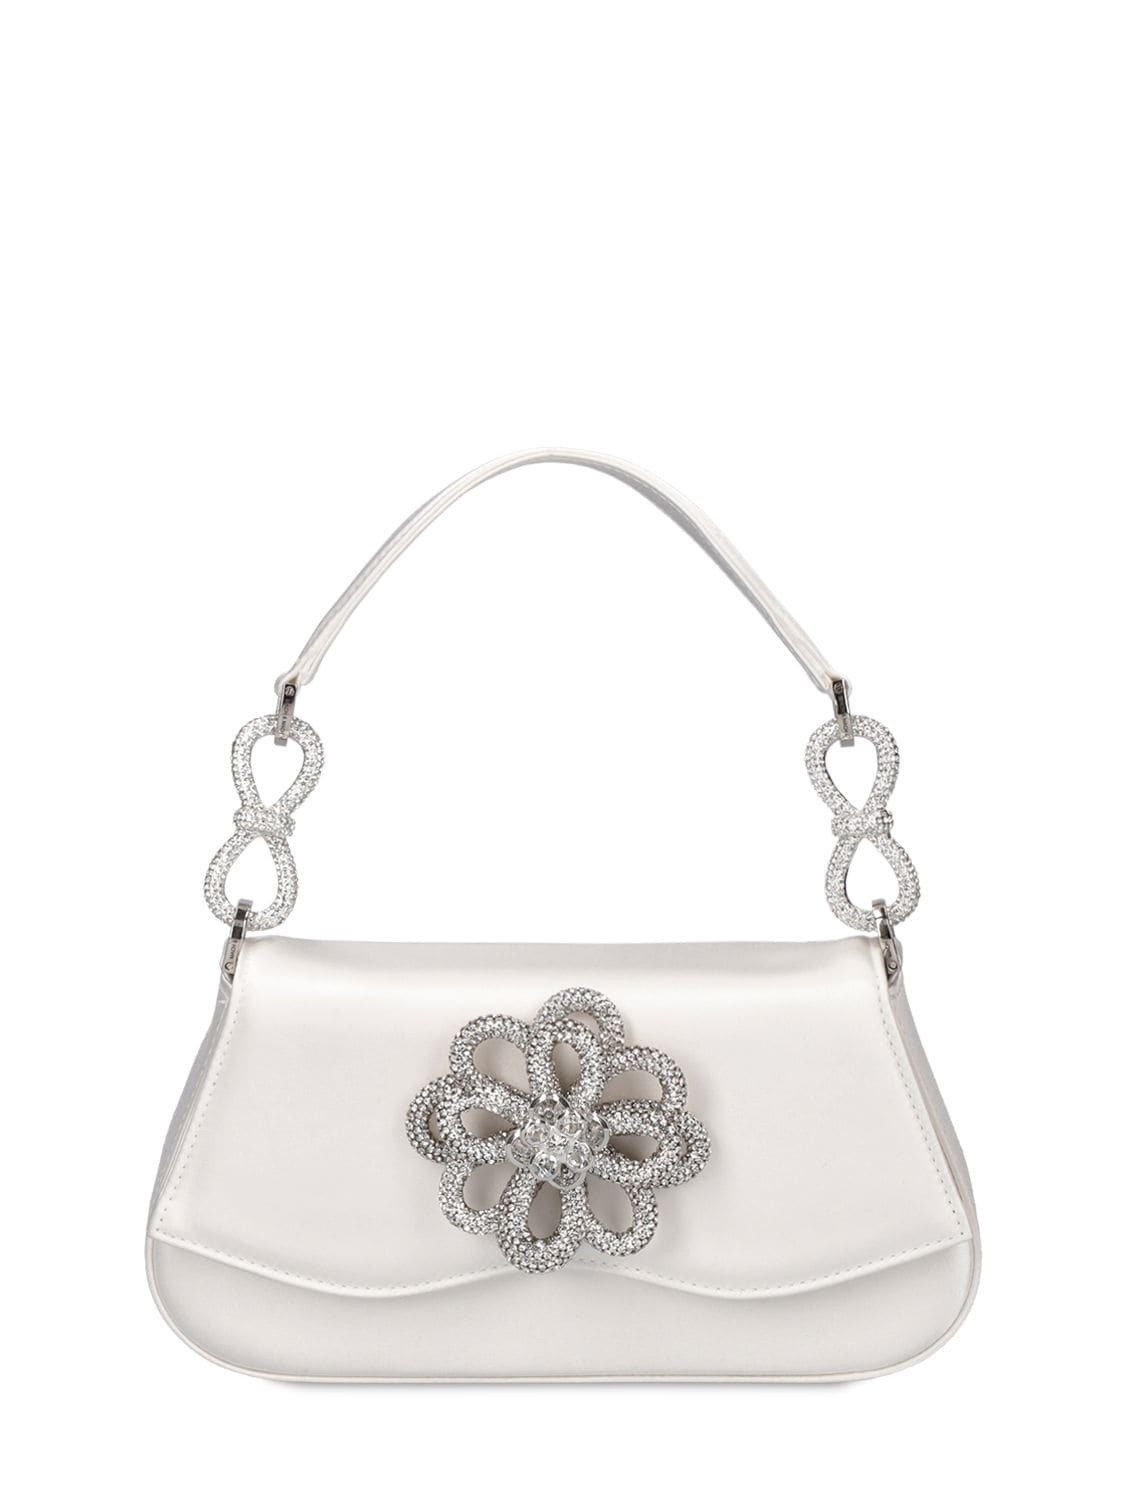 MACH & MACH Flower Satin Top Handle Bag in white